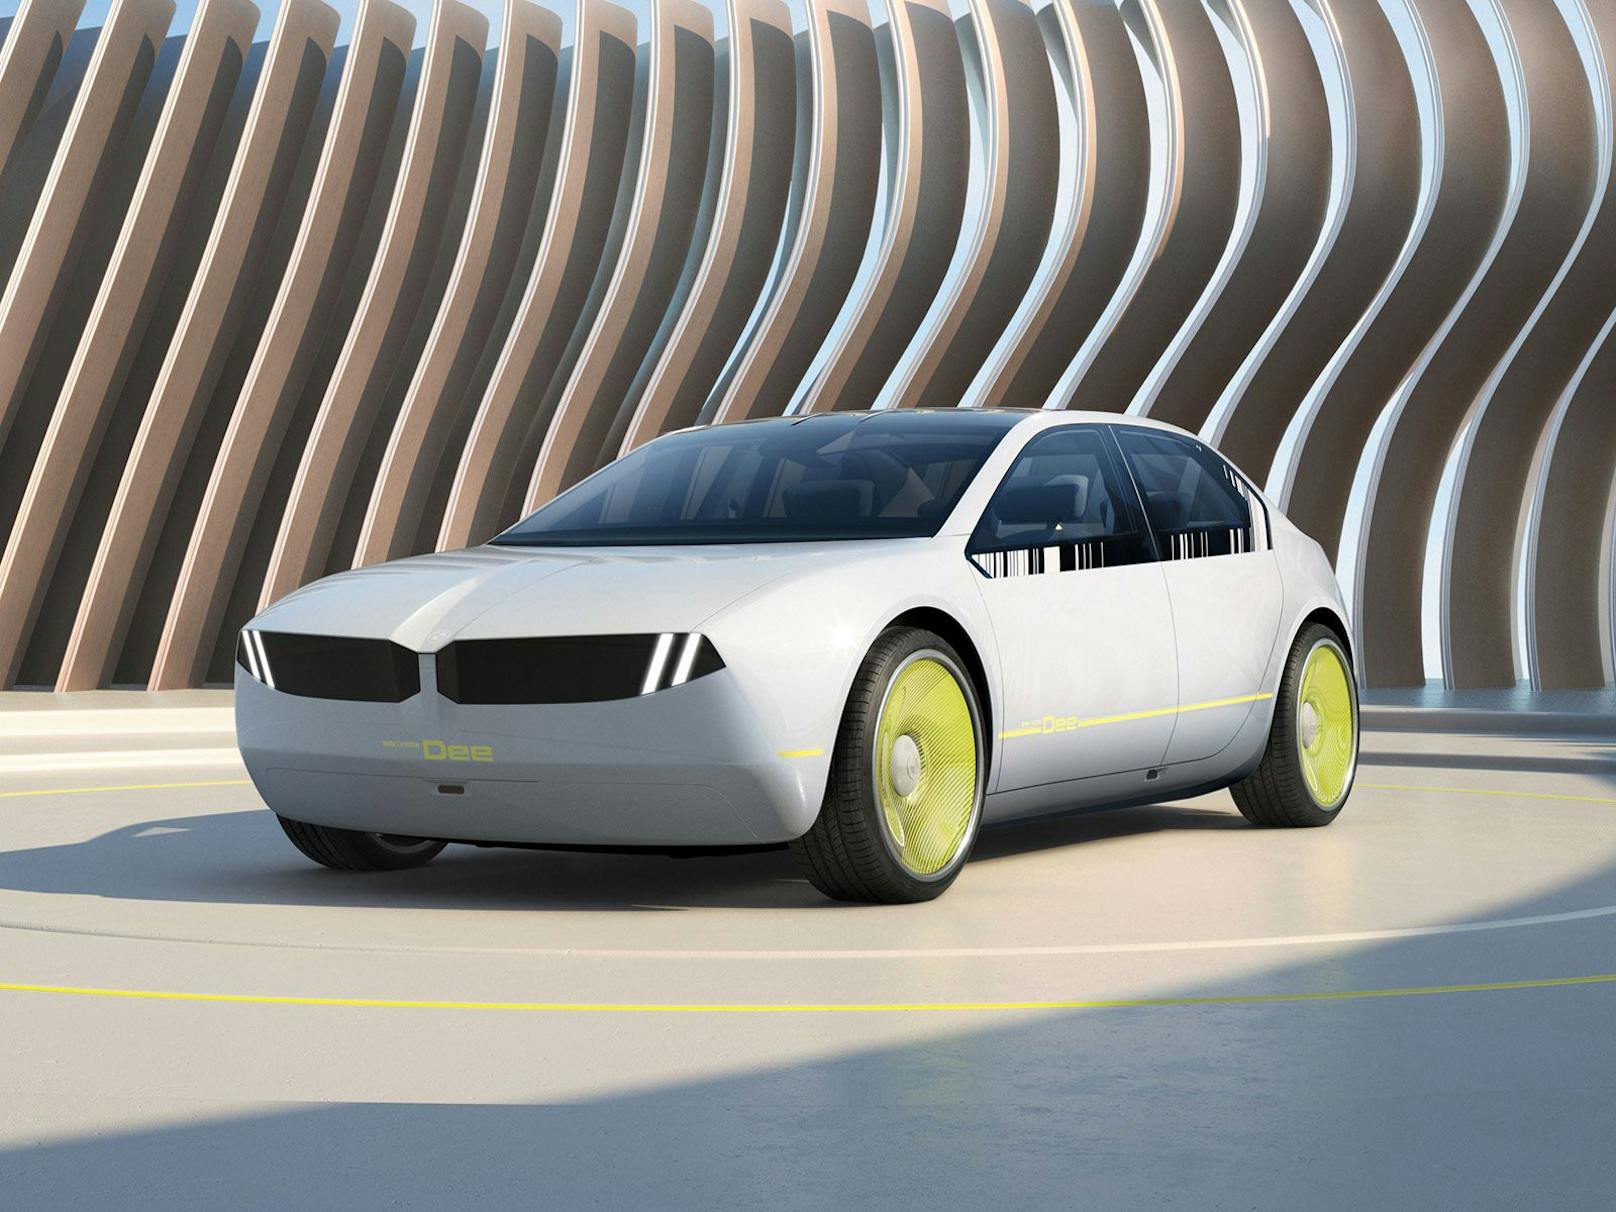 Das Concept Car soll die Designrichtung neuer Modelle zeigen.